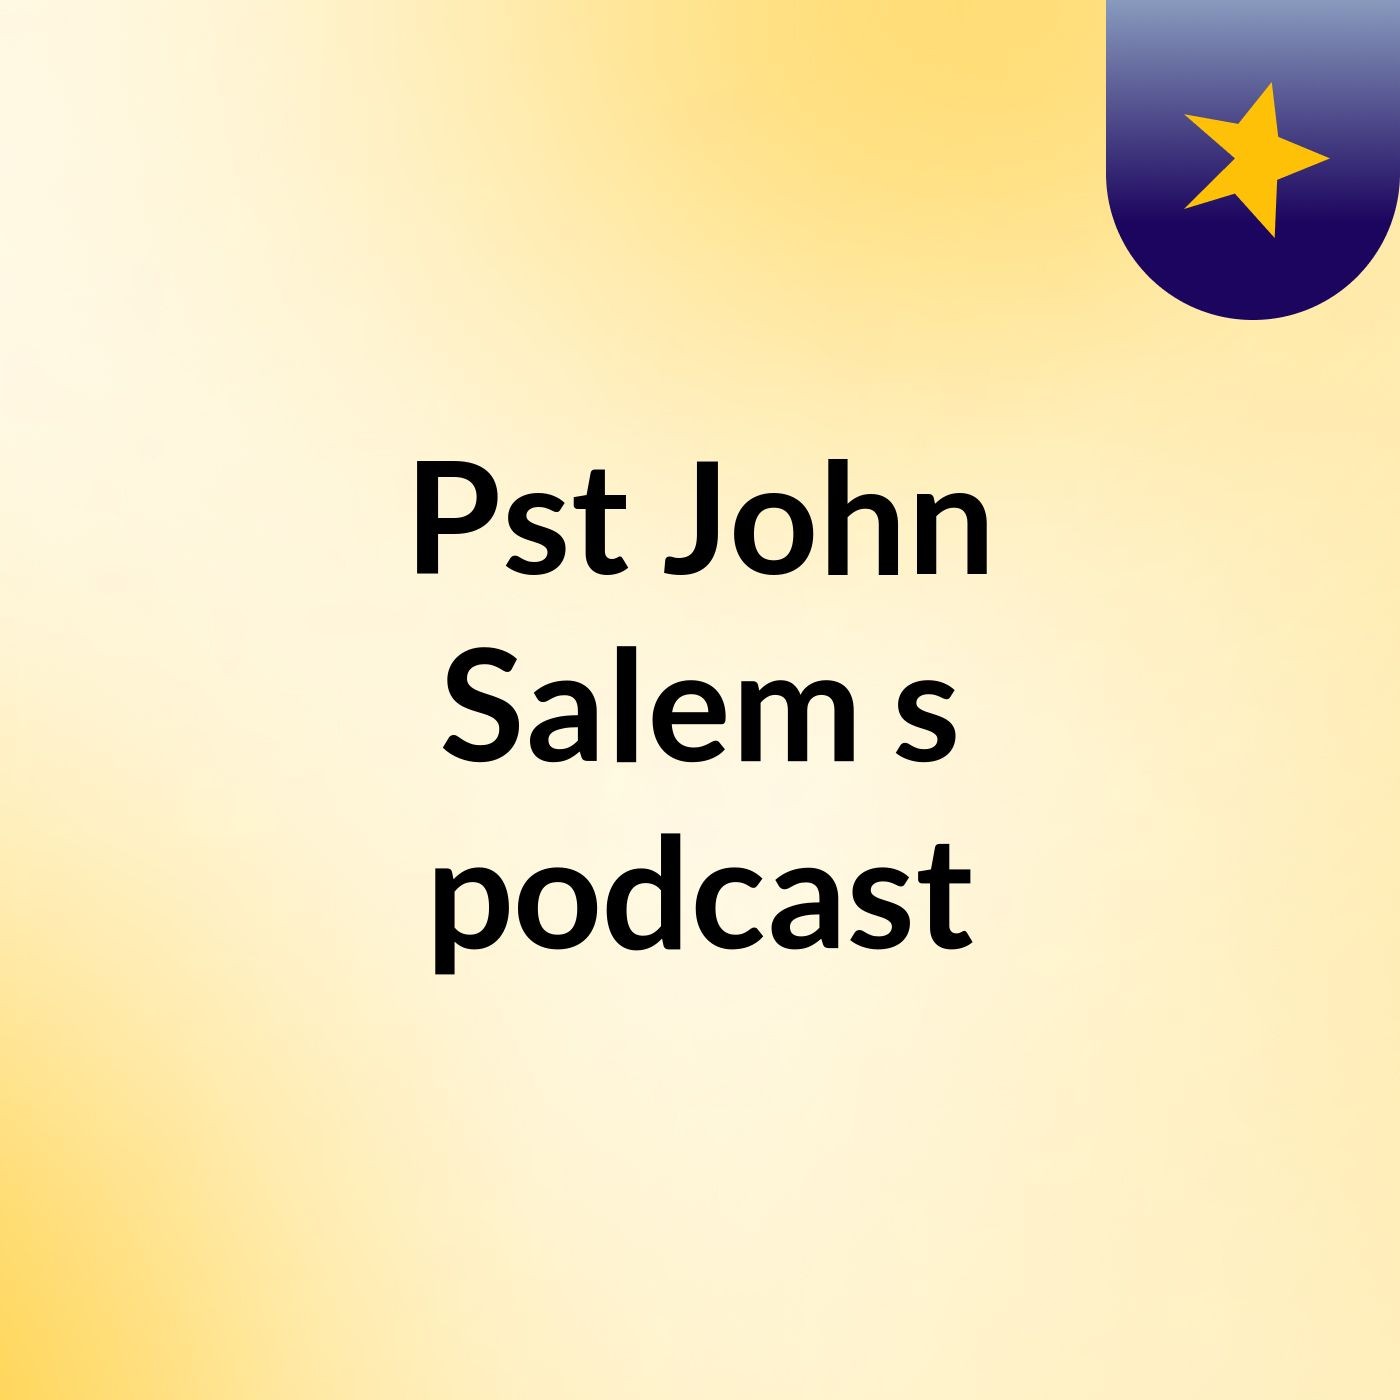 Episode 5 - Pst John Salem's podcast